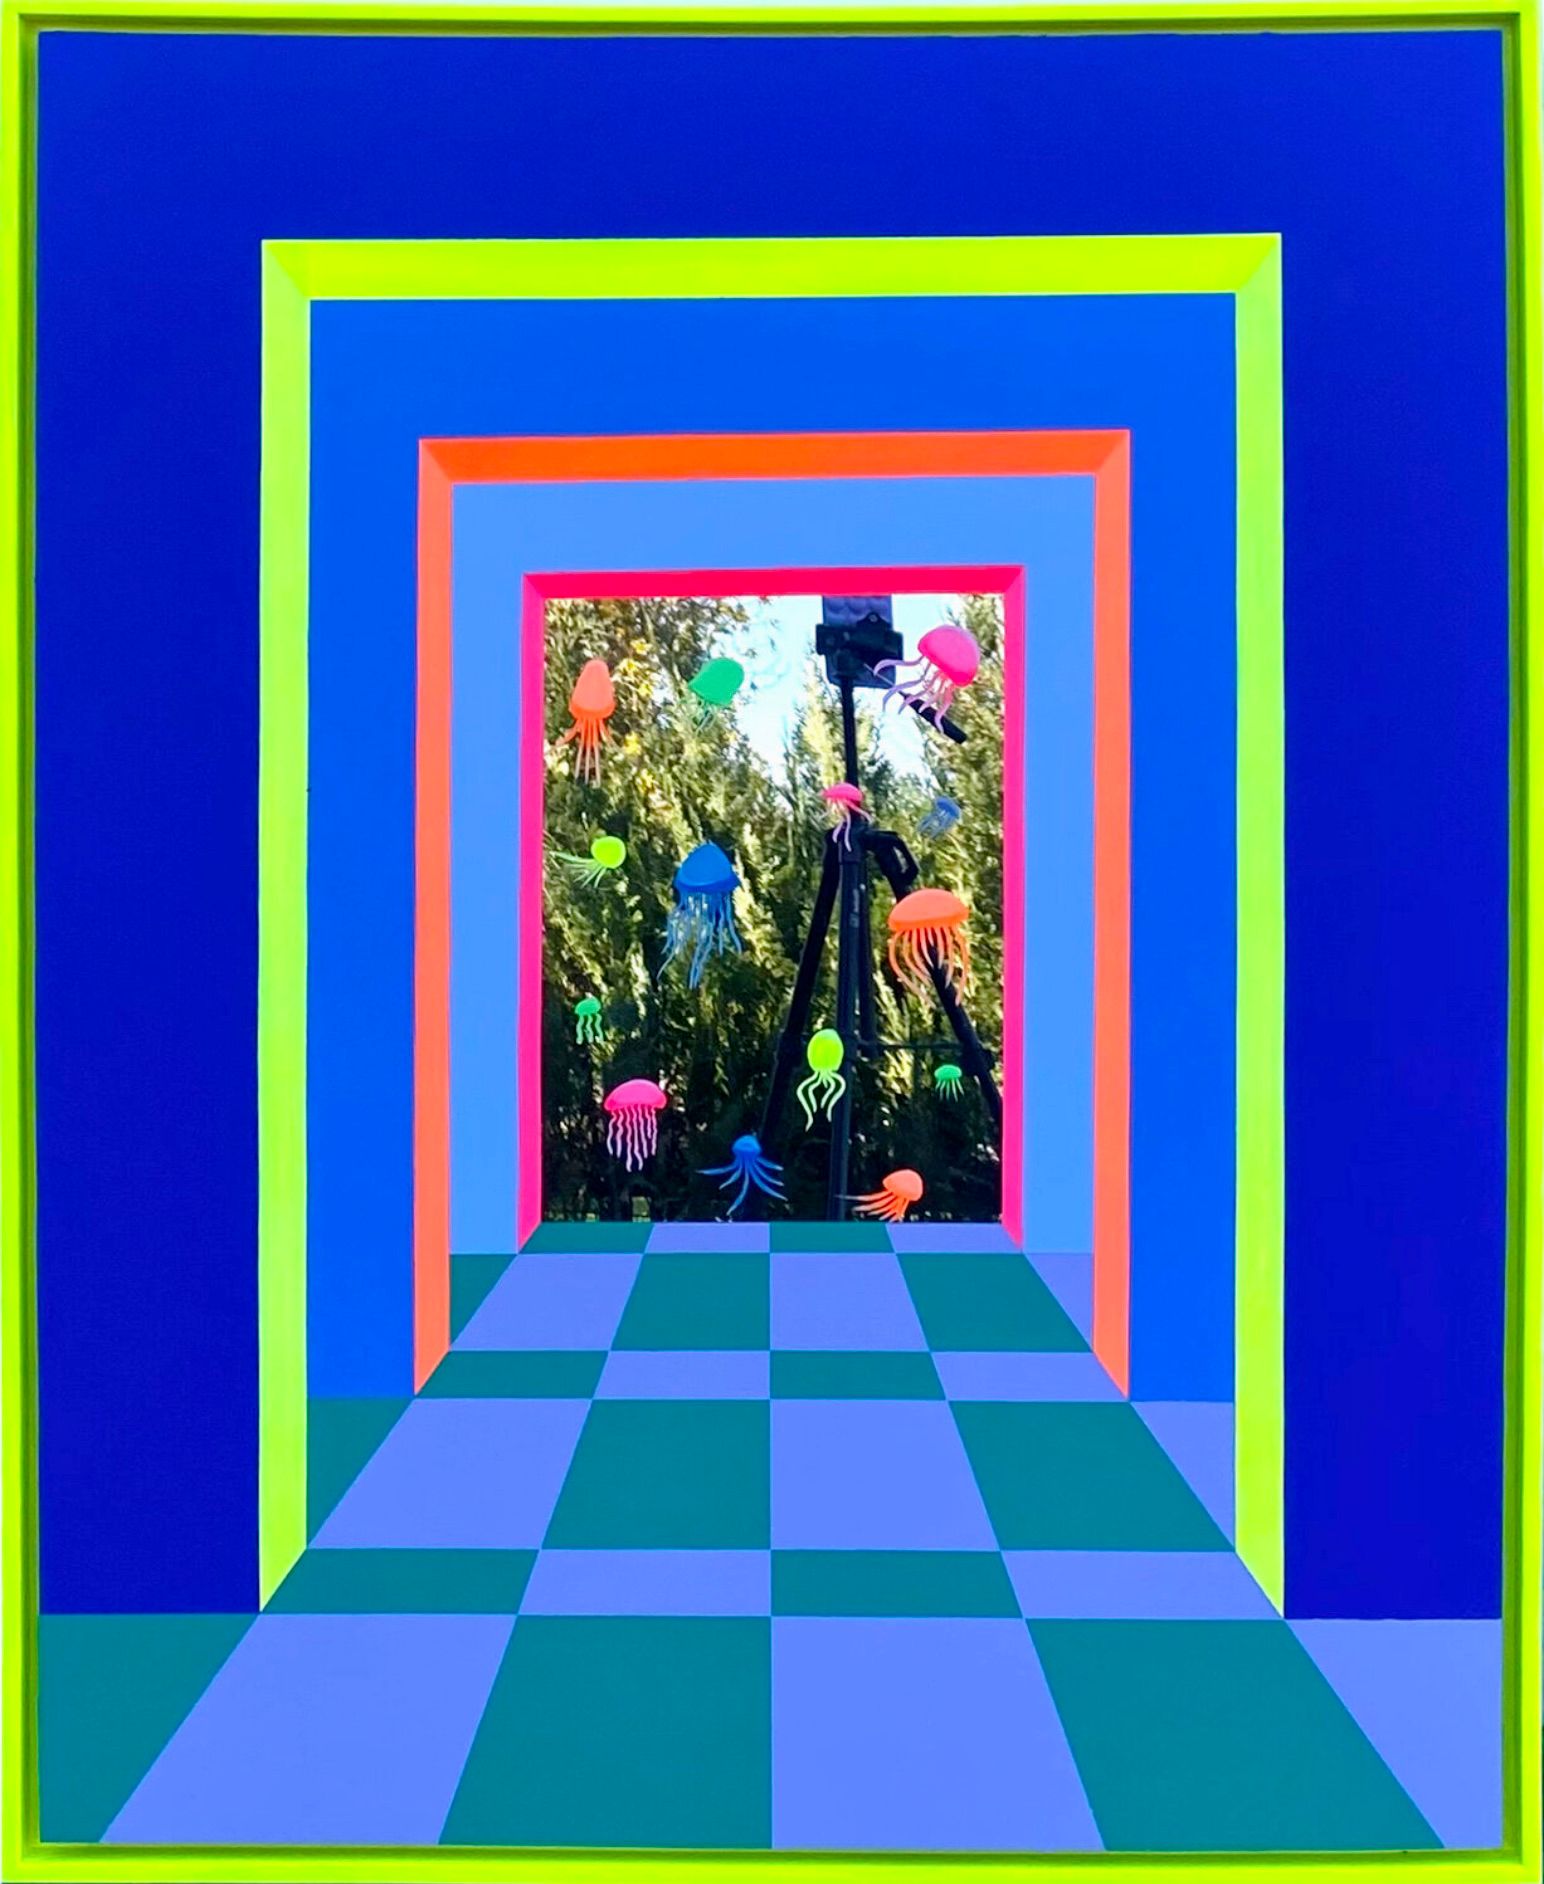 Isabelle Derecque, "El acuario" Pintura colorista, en un lugar misteriosamente coloreado, habitado por criaturas marinas y pintado sobre espejos plexi en estilo pop-up con colores alegres y enérgicos. Visualizado a través de la geometría, las perspectivas, los contrastes y los reflejos.